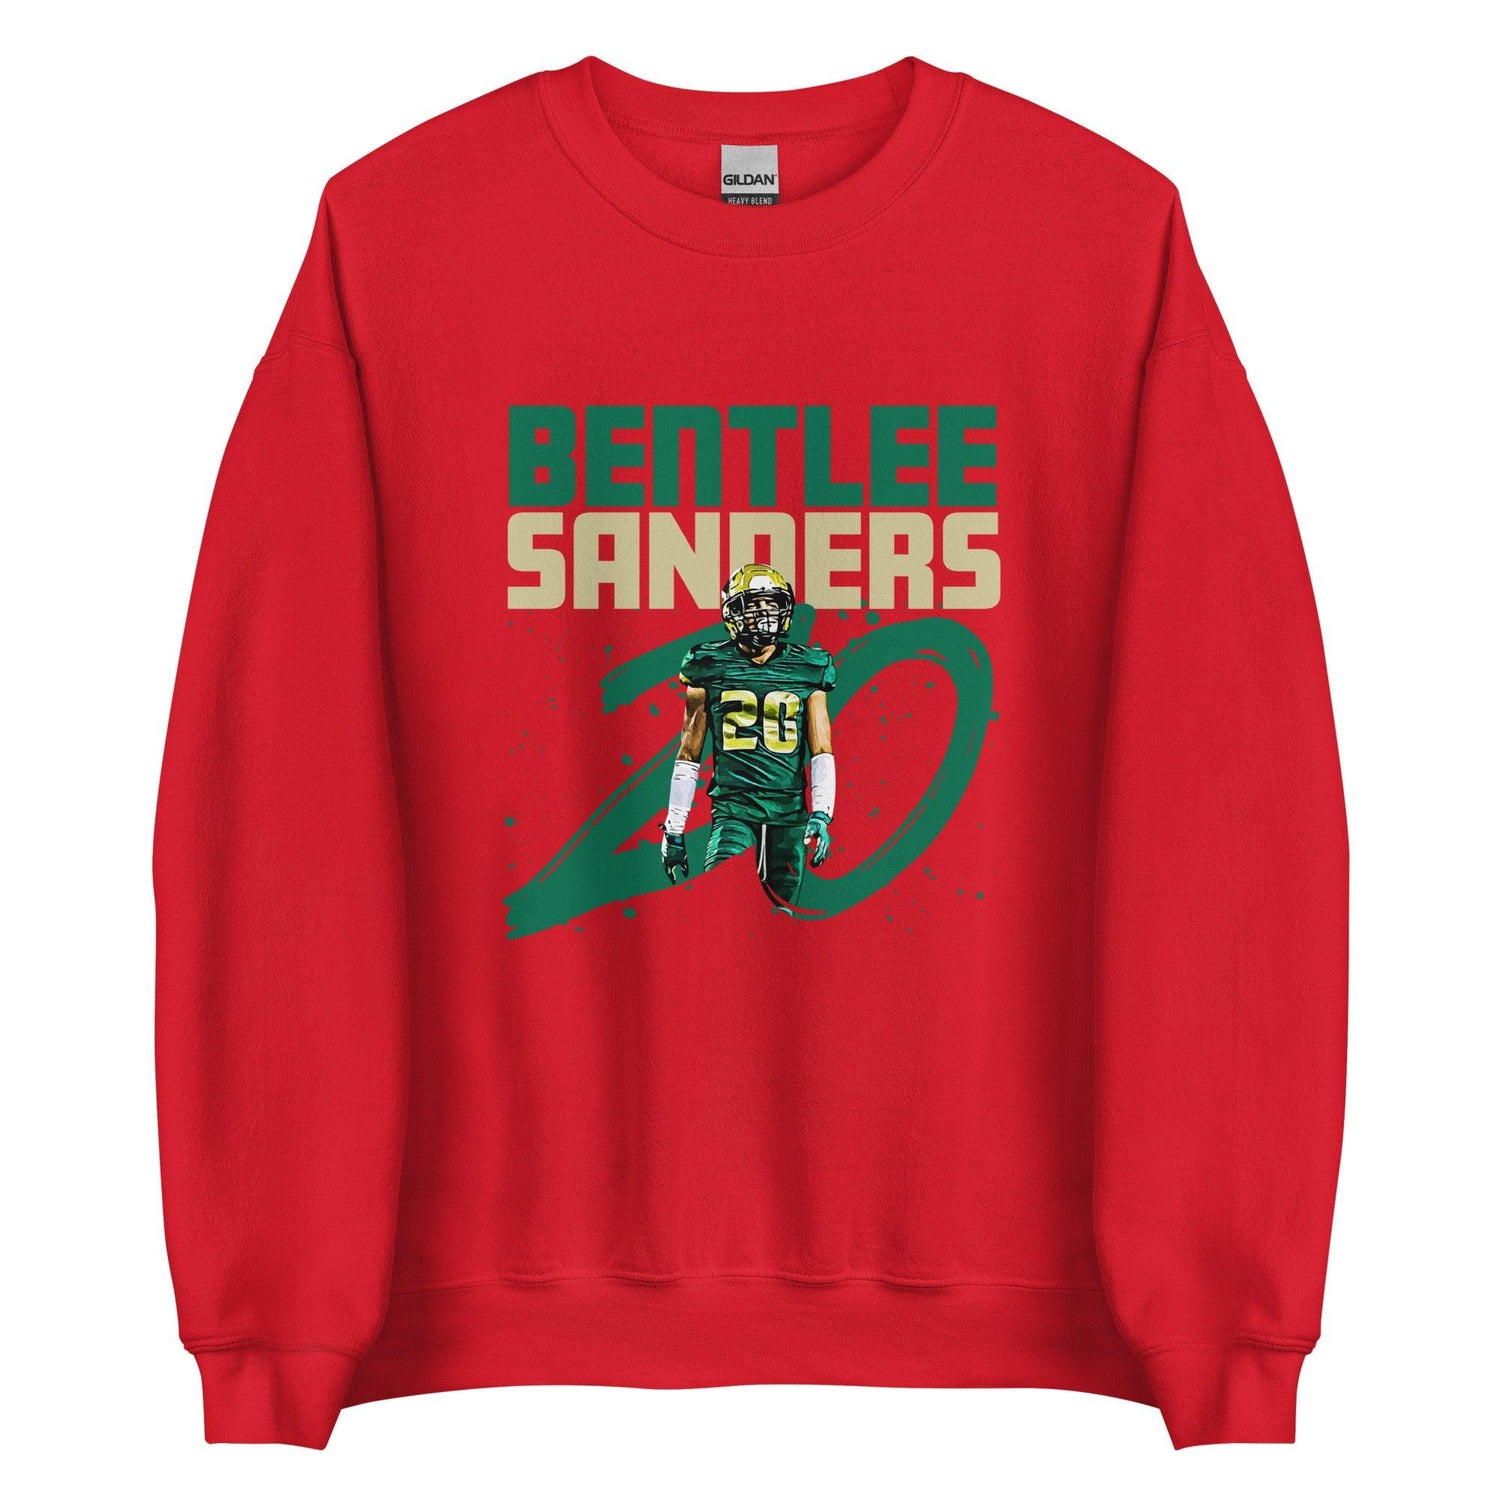 Bentlee Sanders "Gameday" Sweatshirt - Fan Arch